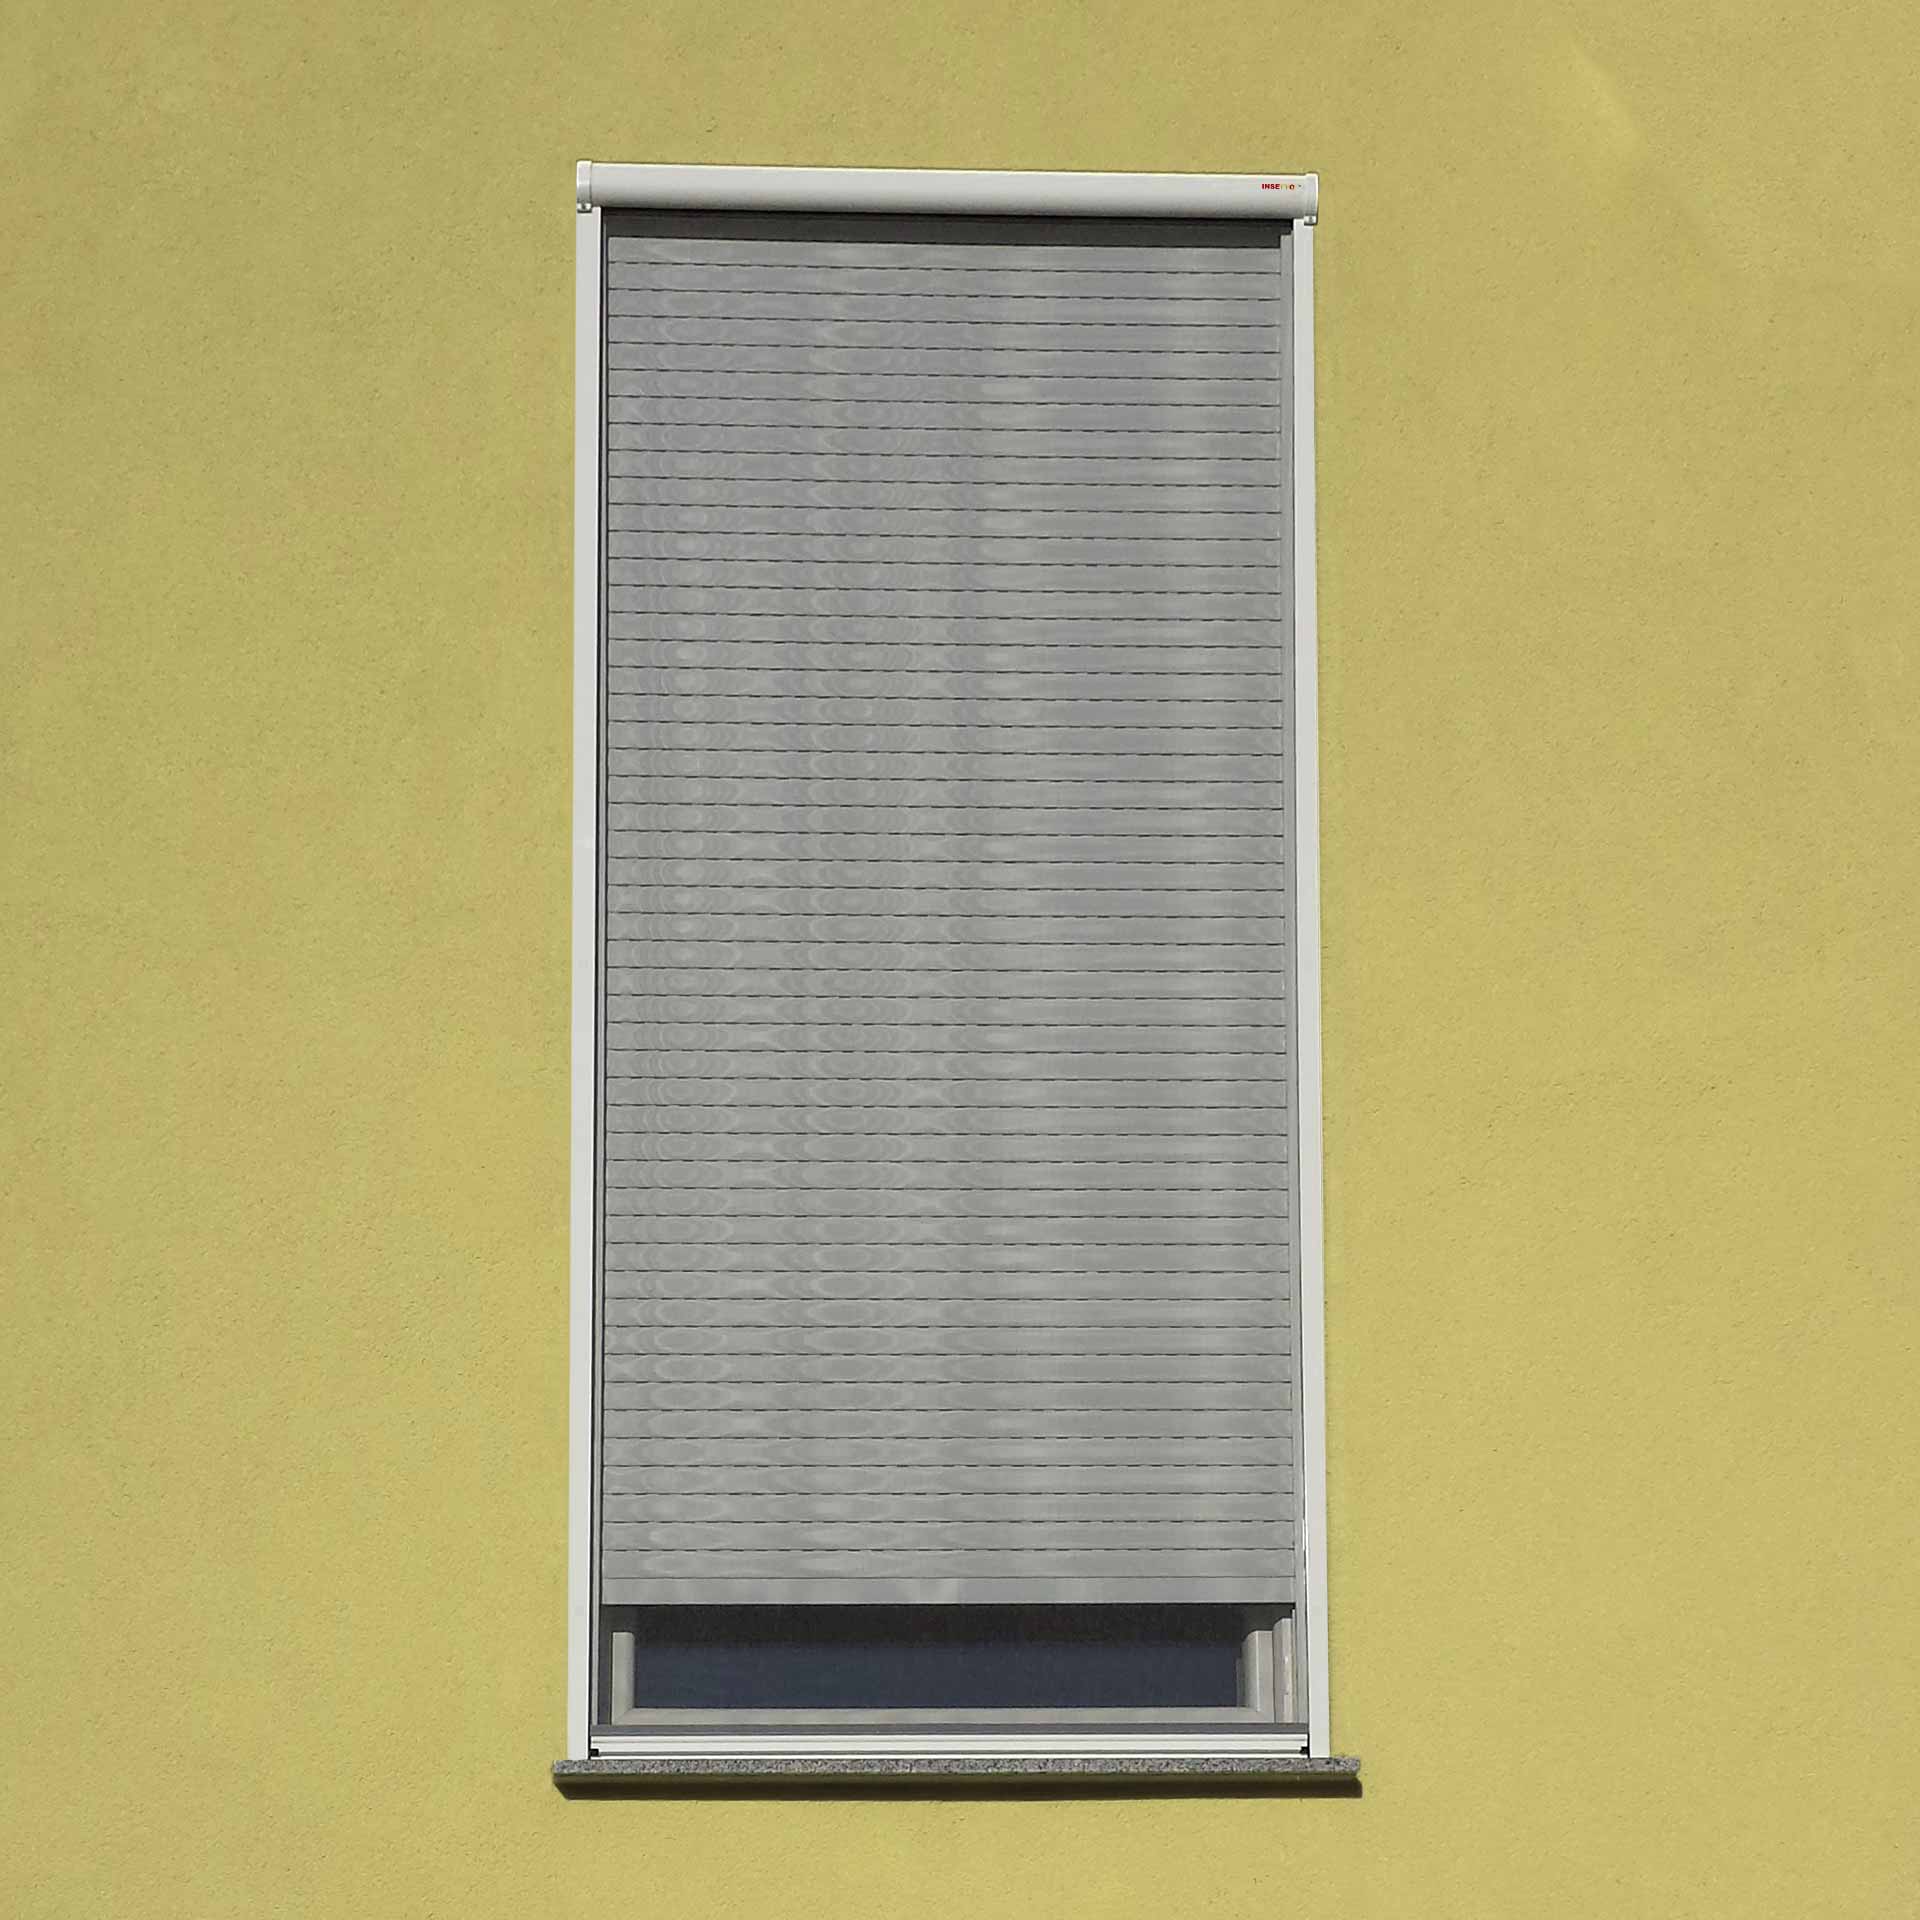 Preiswertes Insektenschutzrollo auf Maß für bodentiefe Fenster | Adria